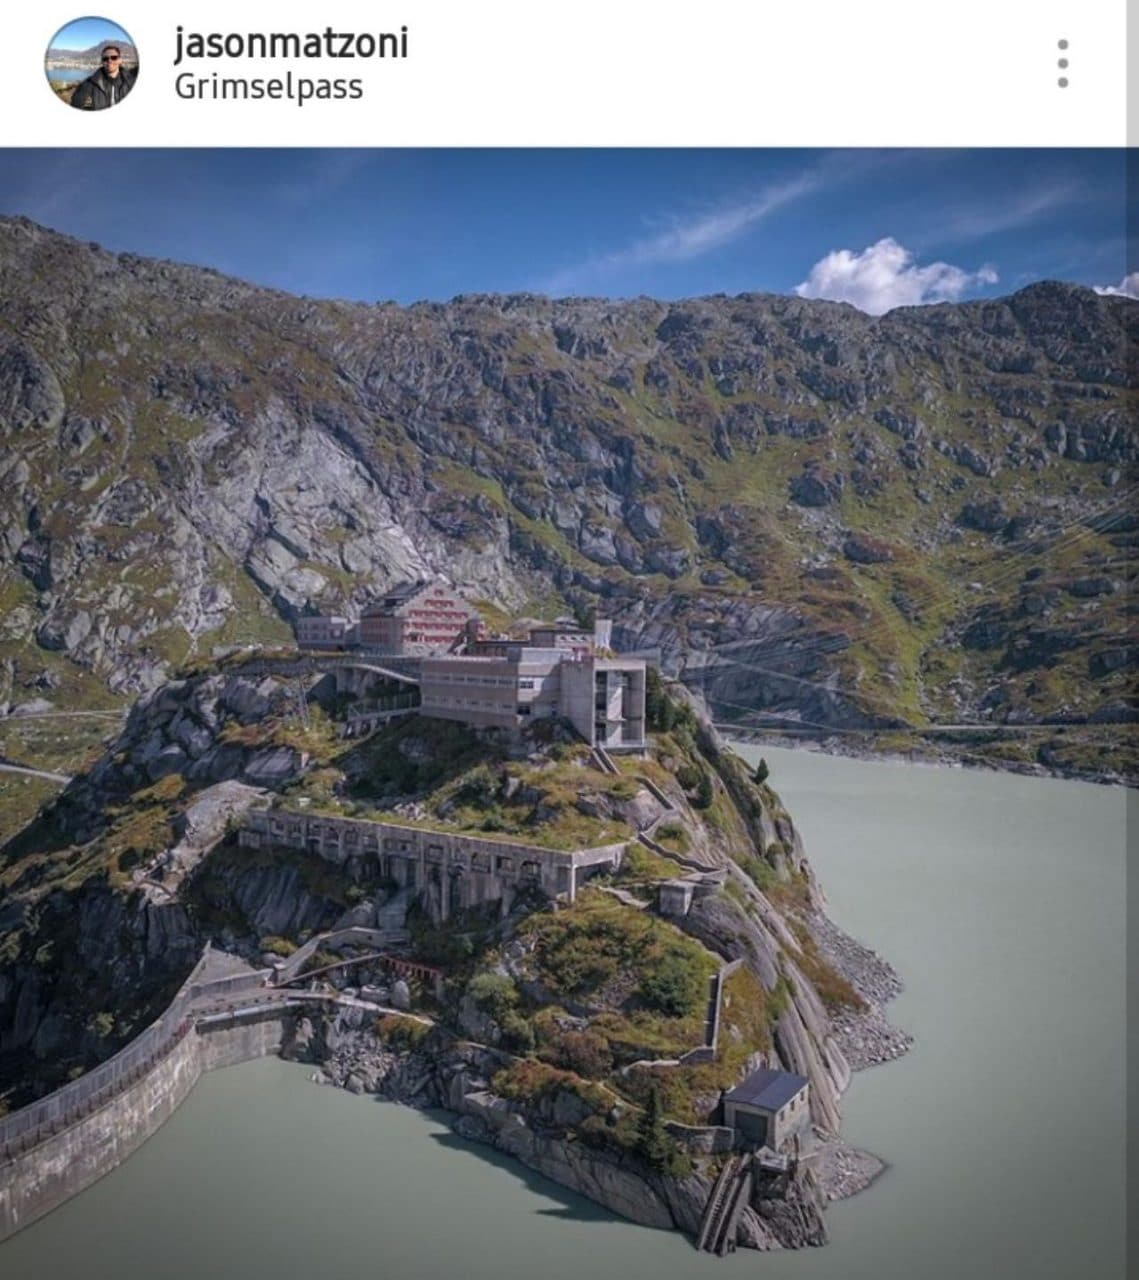 스위스 자동차 여행, ㄱ림젤 패스 중 그림젤 호수 옆 놀렌(Nollen) 바위 위에 위치한 그림젤 호스피스(Grimsel Hospiz), Image -jasonmatzoni instagram